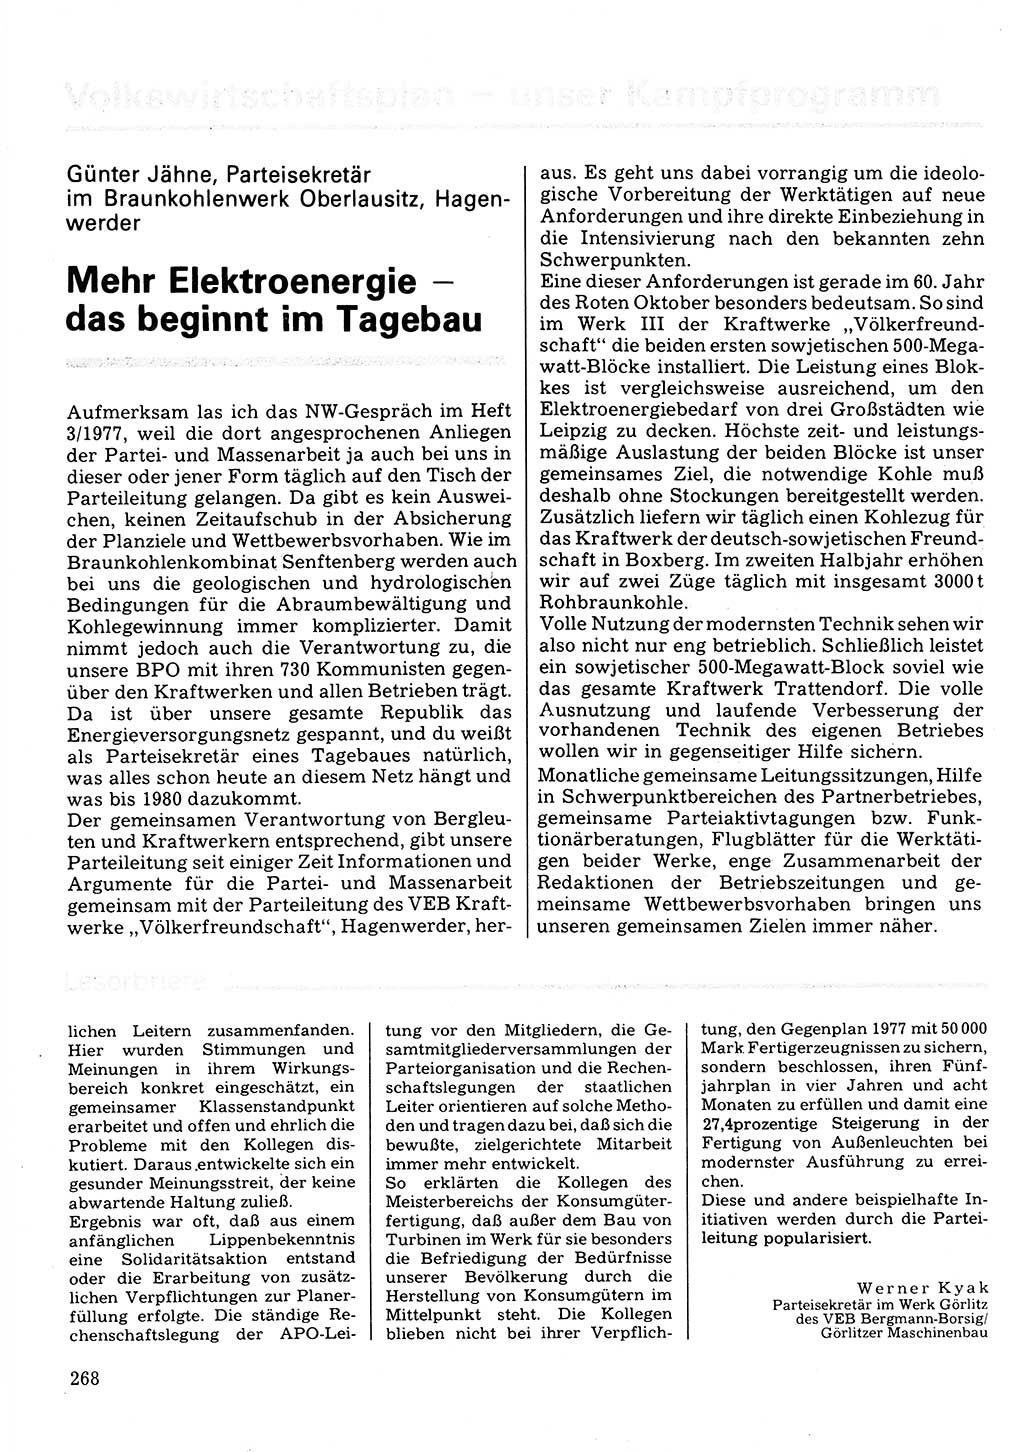 Neuer Weg (NW), Organ des Zentralkomitees (ZK) der SED (Sozialistische Einheitspartei Deutschlands) für Fragen des Parteilebens, 32. Jahrgang [Deutsche Demokratische Republik (DDR)] 1977, Seite 268 (NW ZK SED DDR 1977, S. 268)